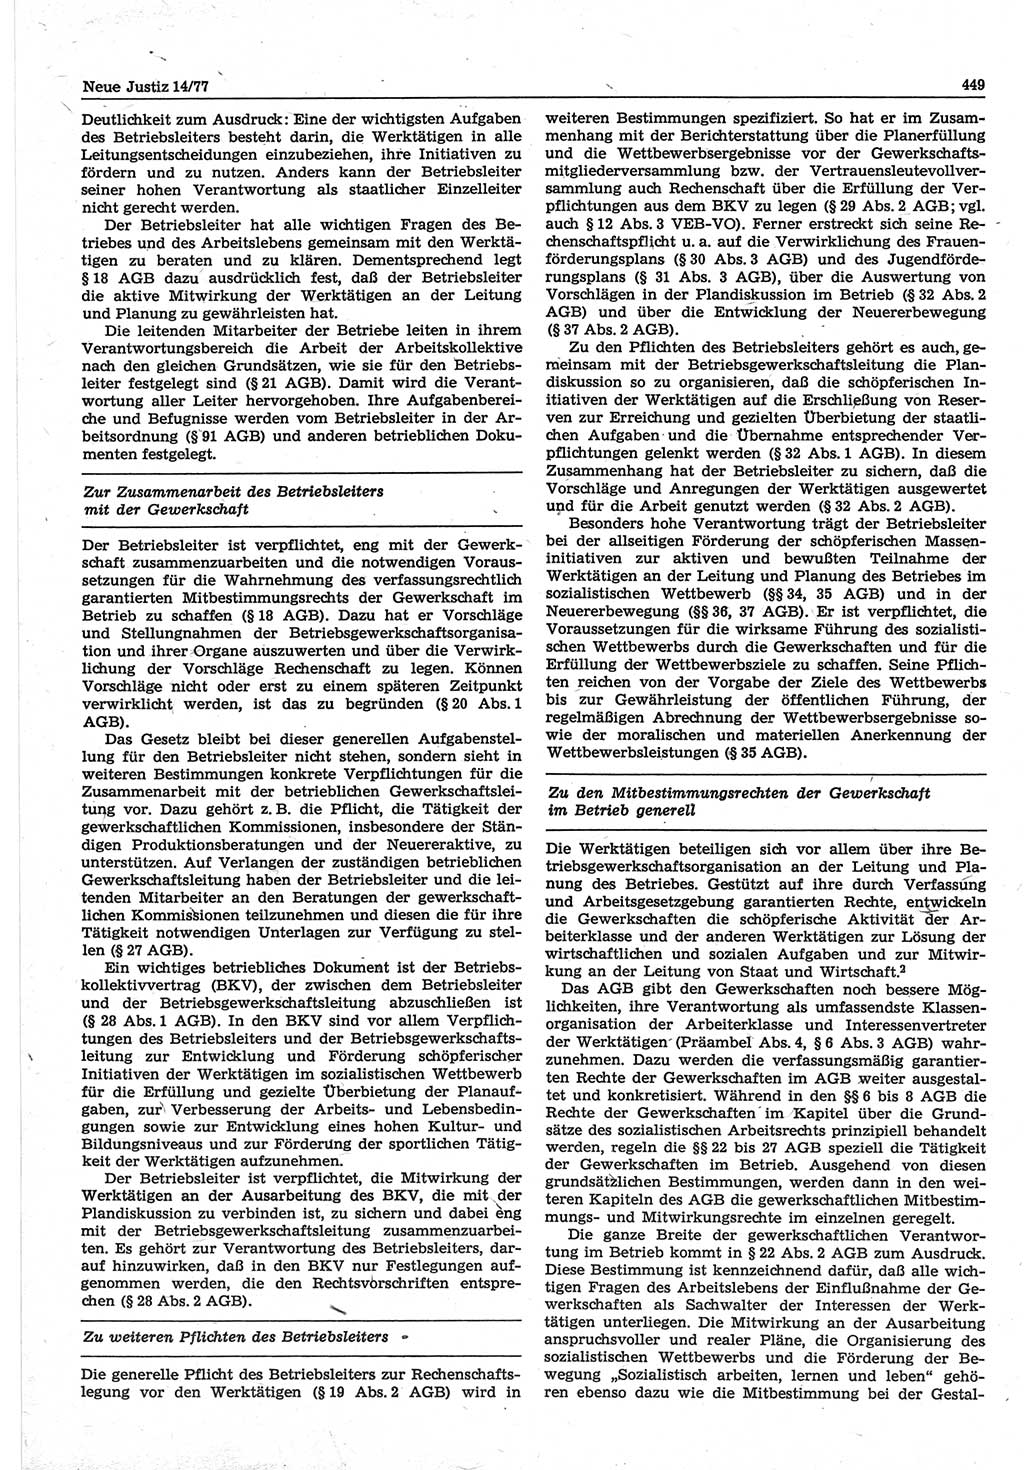 Neue Justiz (NJ), Zeitschrift für Recht und Rechtswissenschaft-Zeitschrift, sozialistisches Recht und Gesetzlichkeit, 31. Jahrgang 1977, Seite 449 (NJ DDR 1977, S. 449)